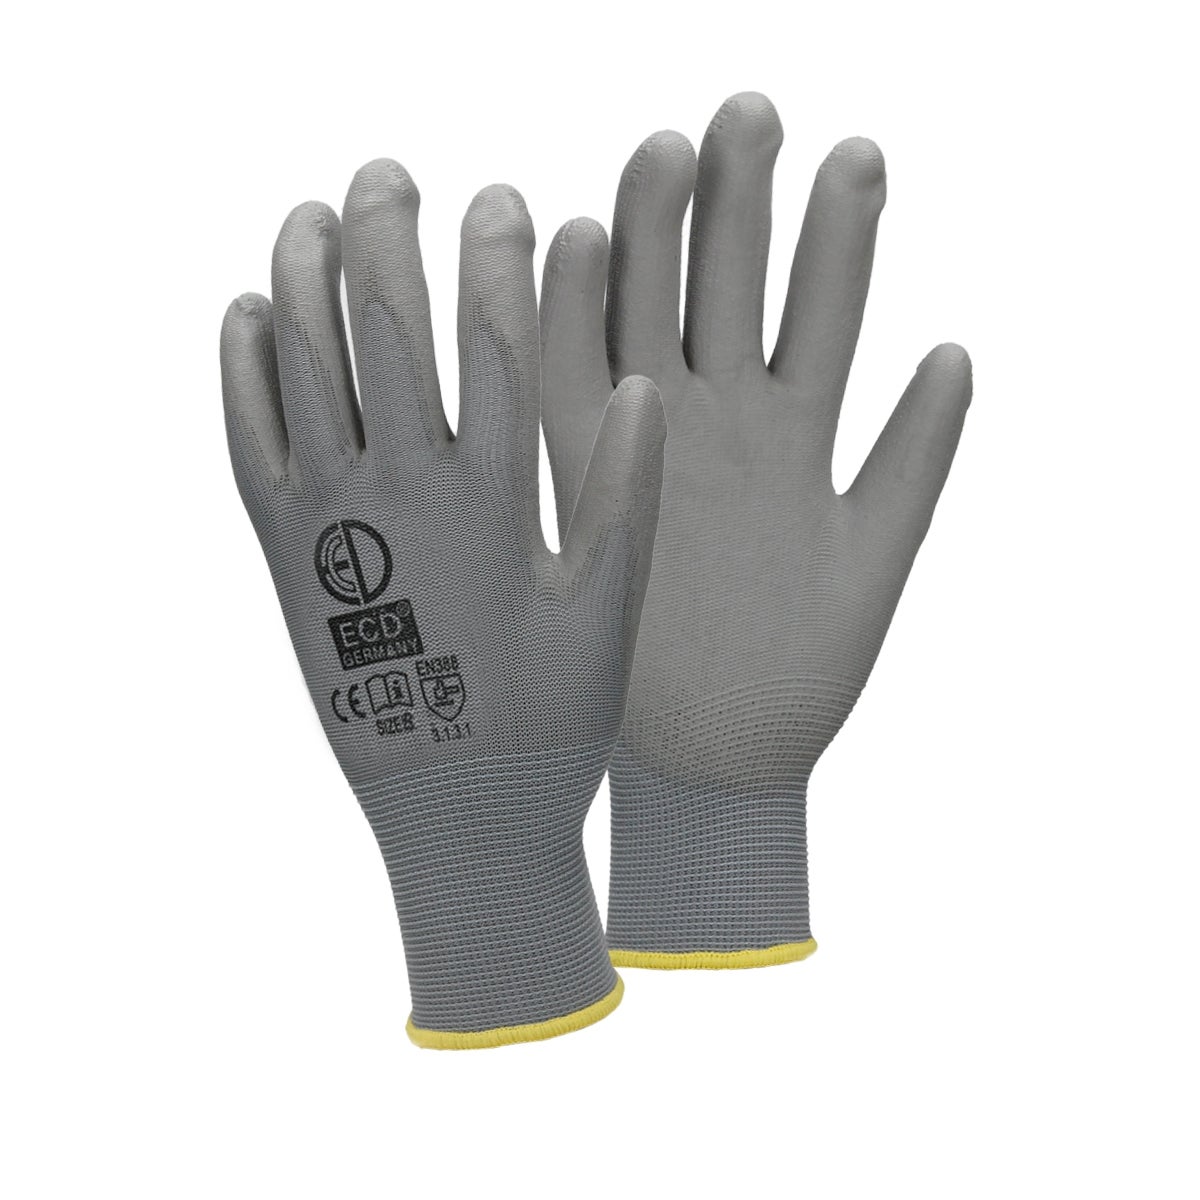 ECD Germany 12 Paar Arbeitshandschuhe mit PU-Beschichtung - Größe 8-M - Grau - Mechanikerhandschuhe Montagehandschuhe Schutzhandschuhe Gartenhandschuhe Handschuhe